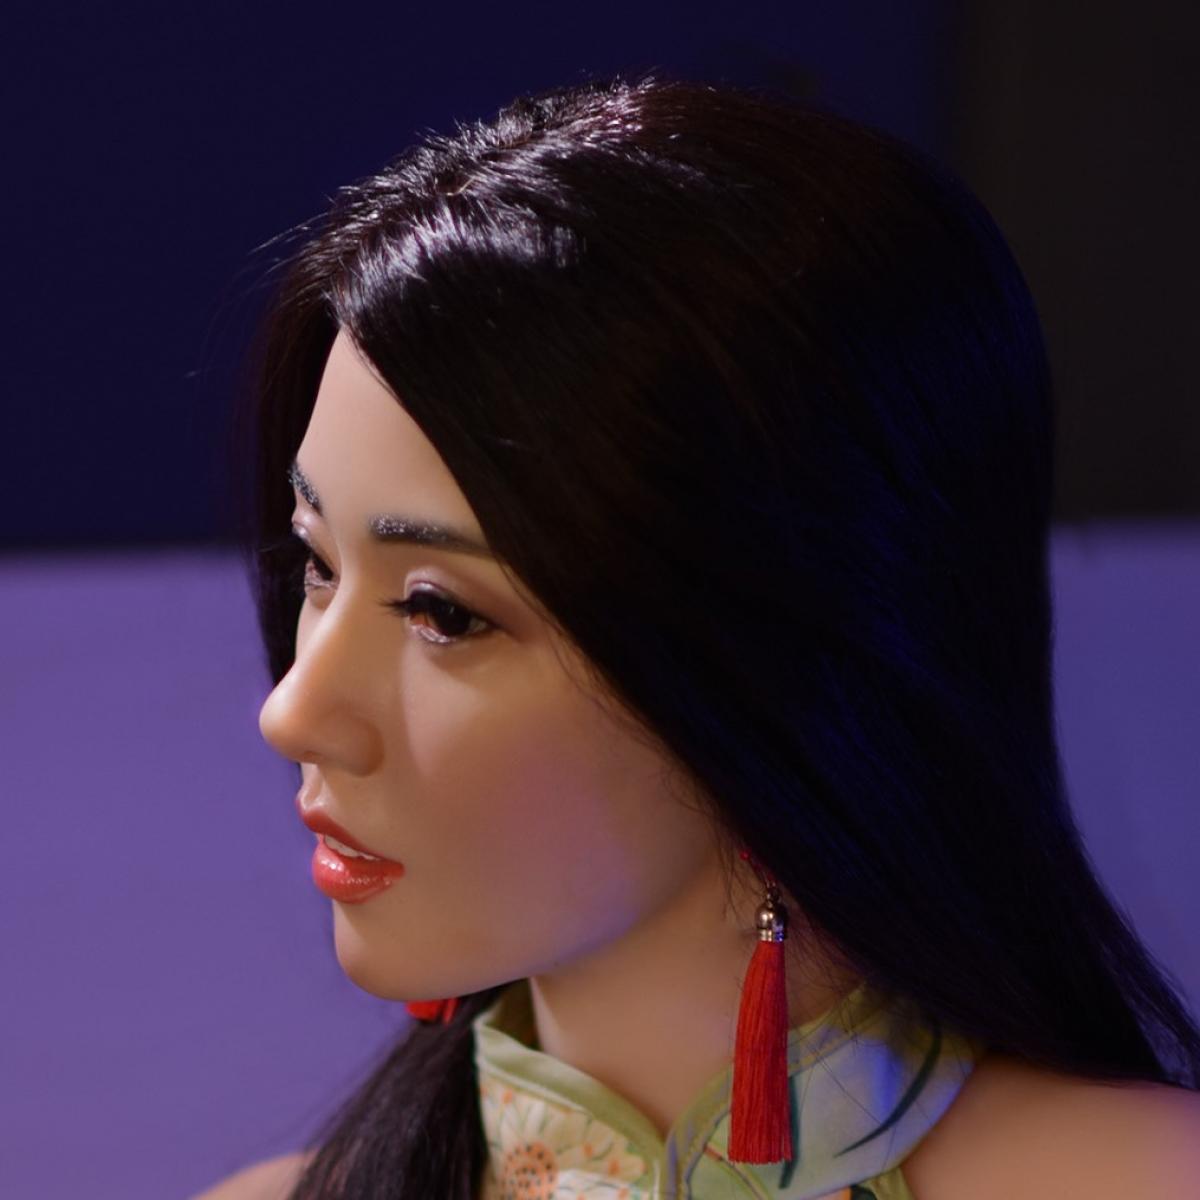 Neodoll Allure Rebecca - Realistic Sex Doll -161cm - Tan